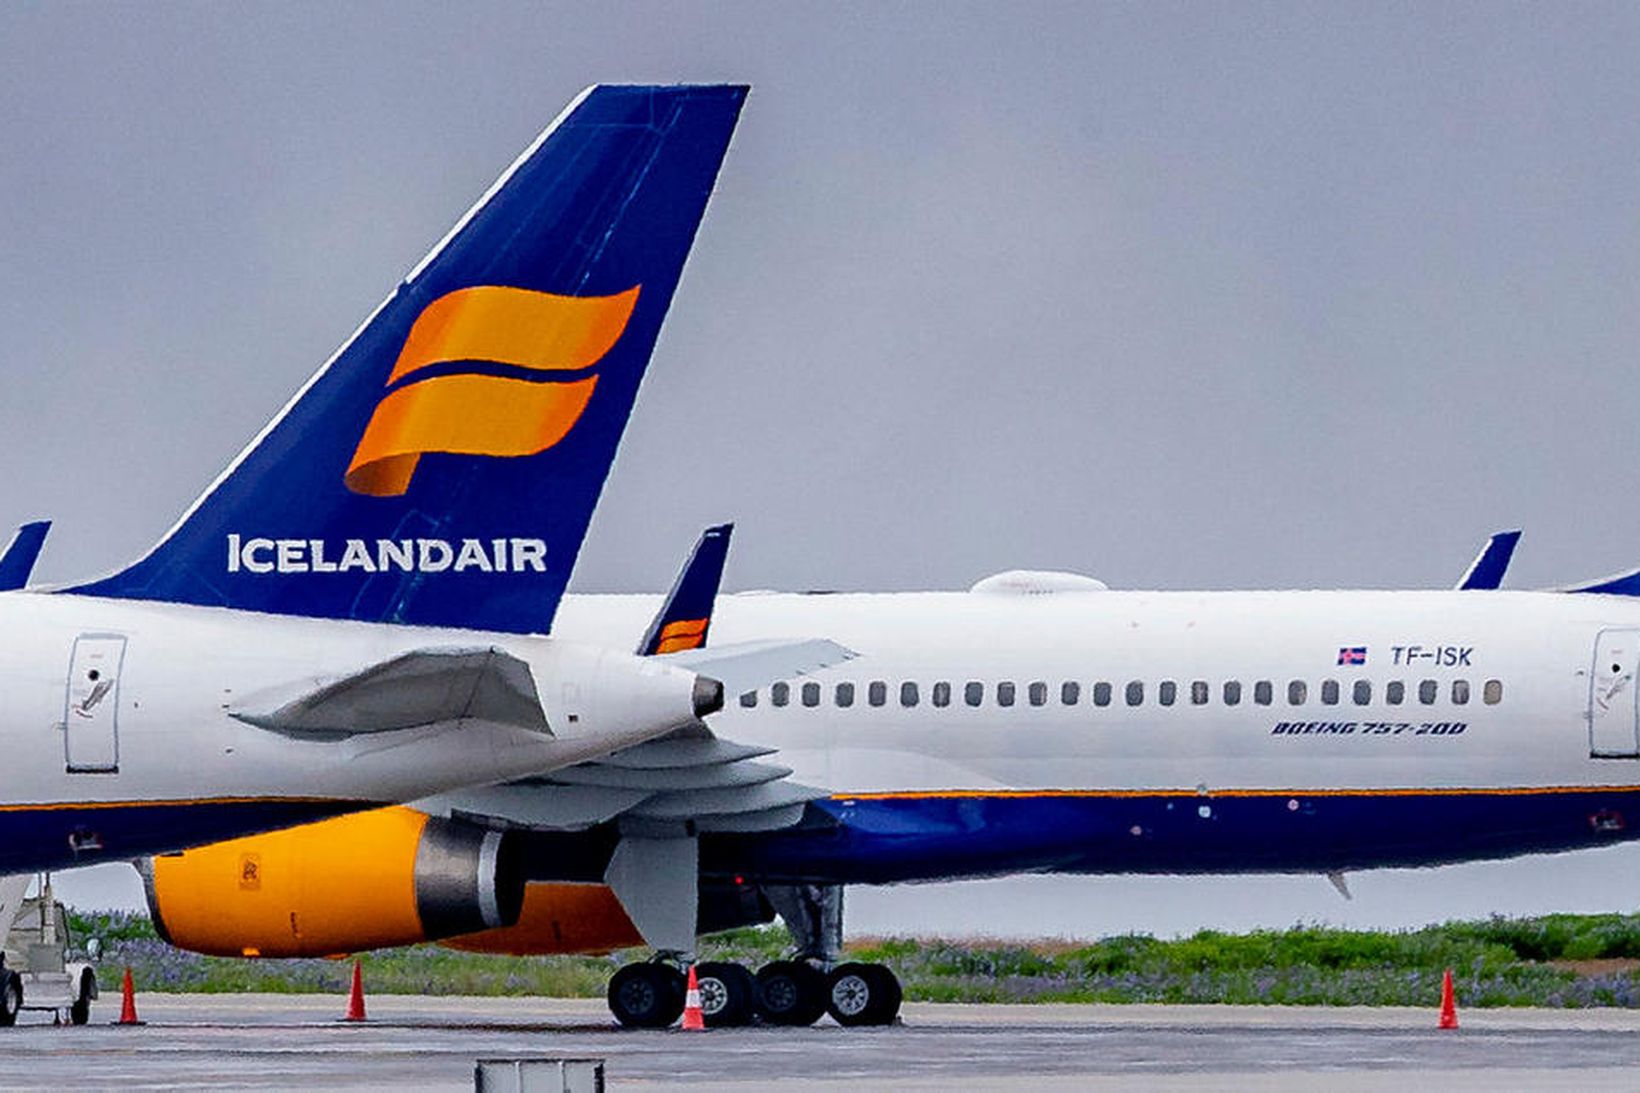 Þotur Icelandair.